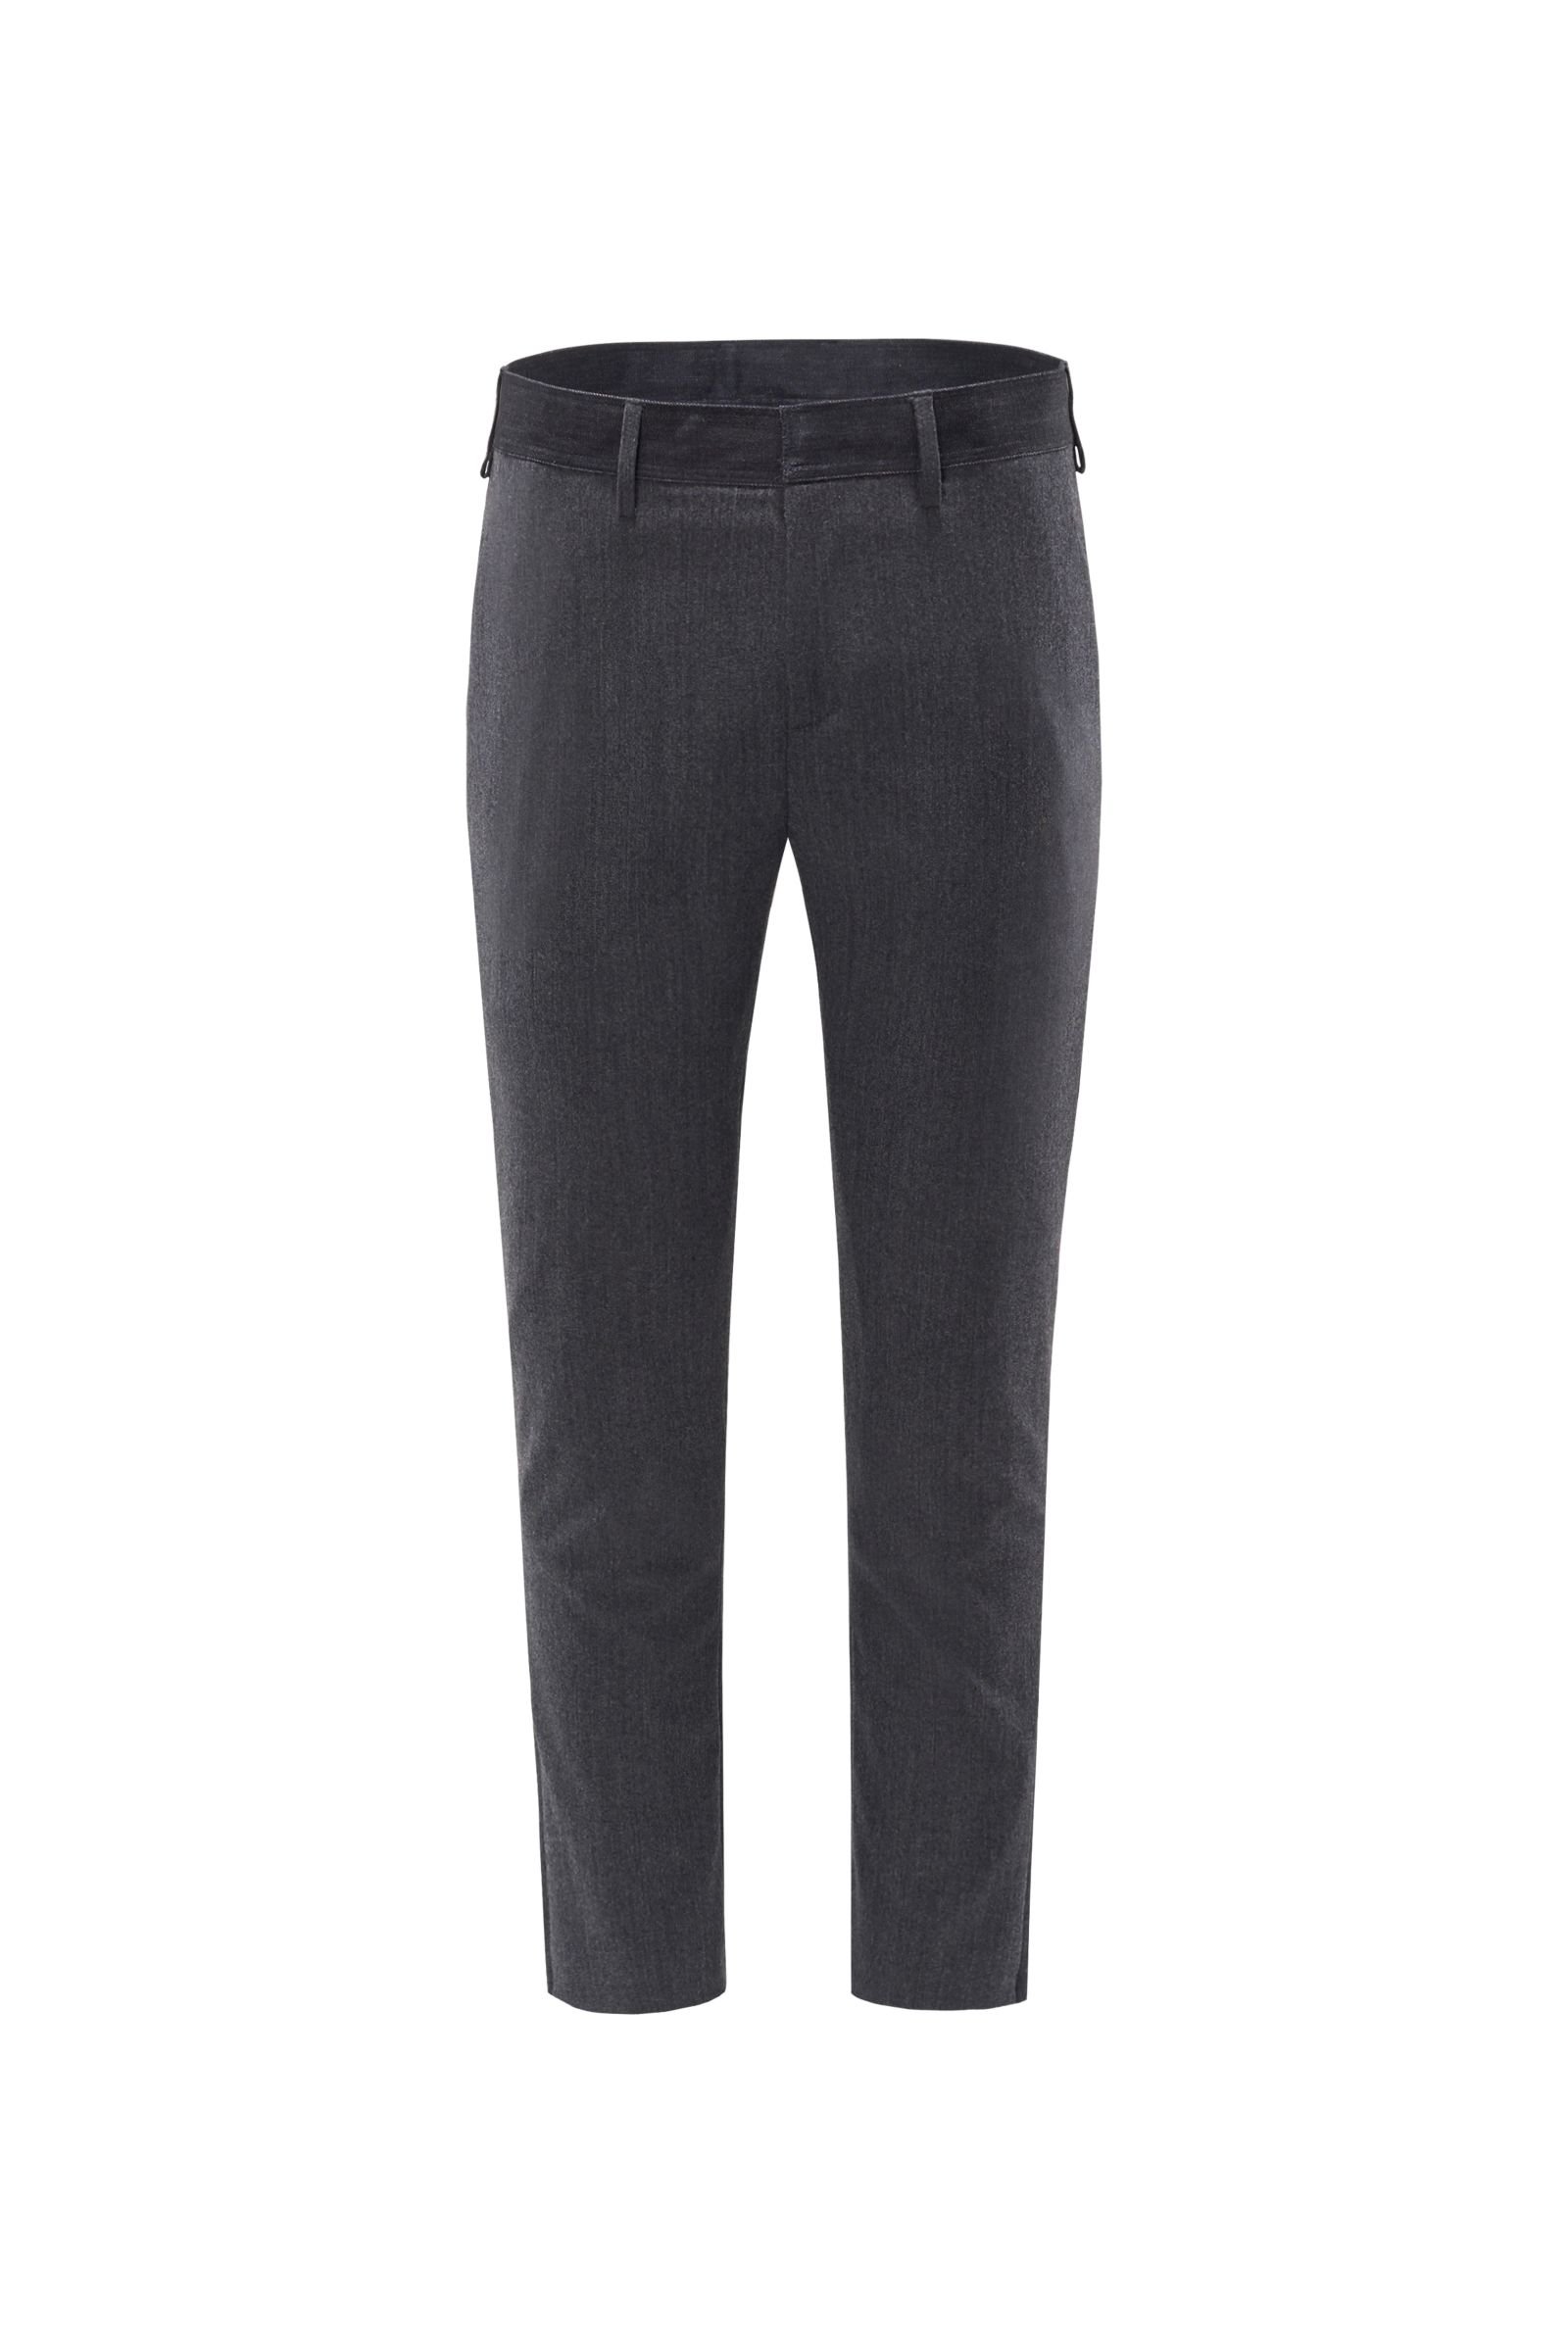 Wool trousers dark grey